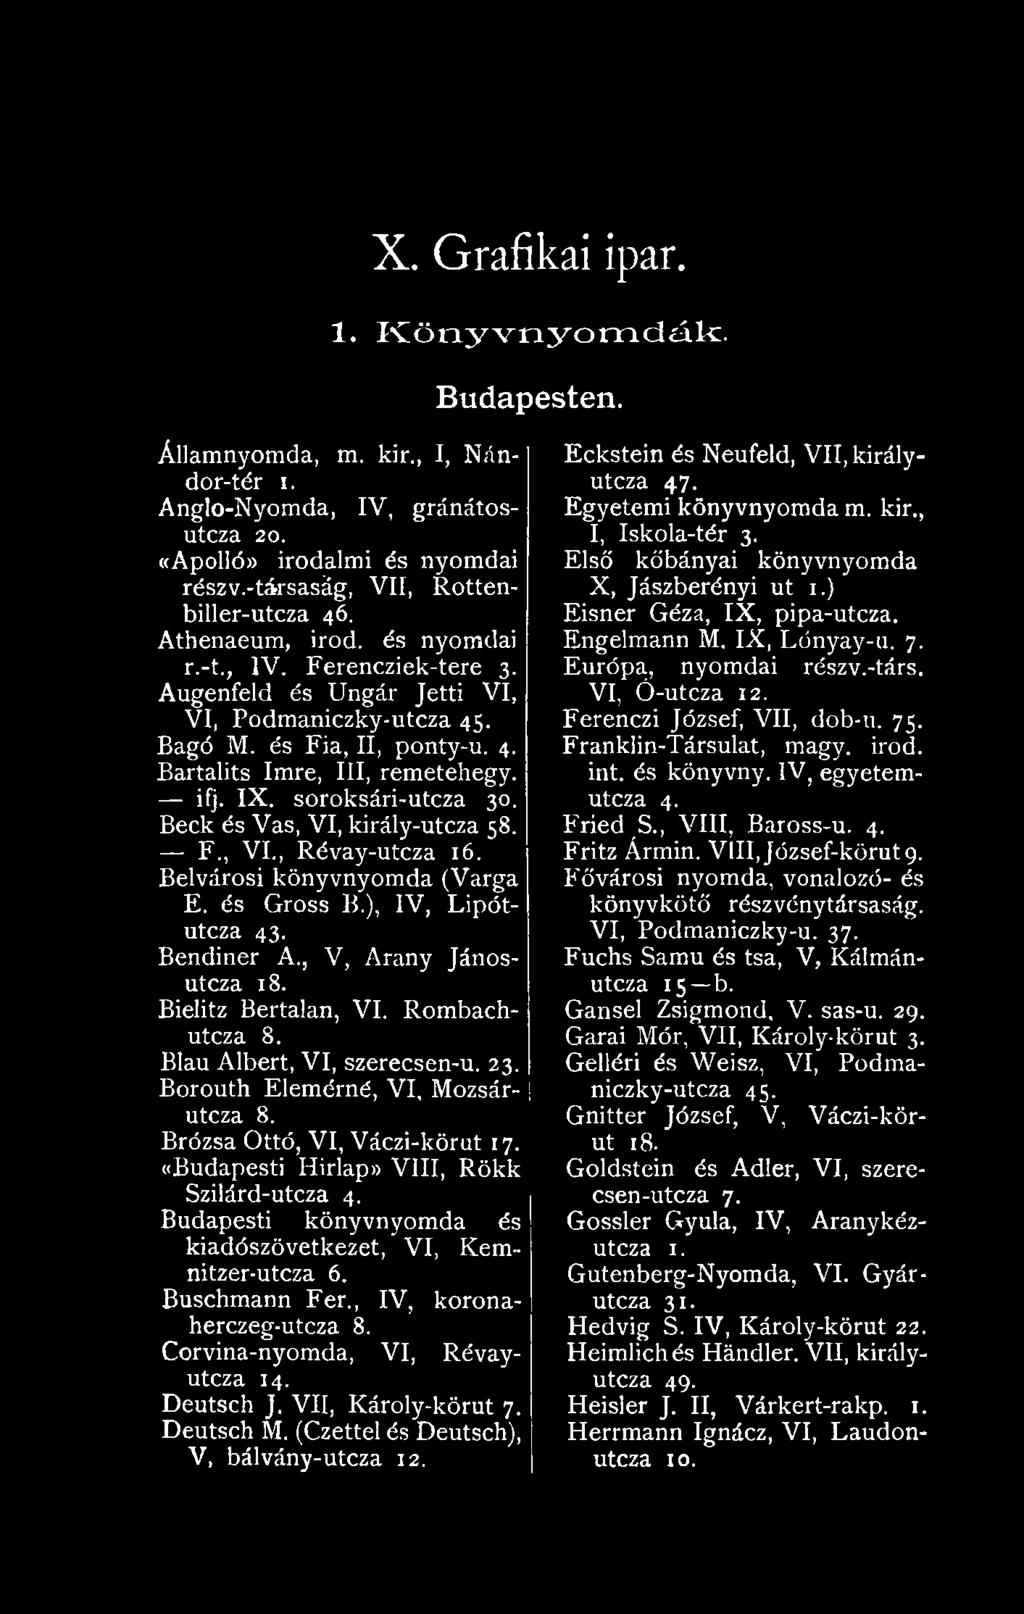 Budapesti könyvnyomda és kiadószövetkezet, VI, Kemnitzer-utcza 6. Buschmann Fér., IV, koronaherczeg-utcza 8. Corvina-nyomda, VI, Révayutcza 14. Deutsch J. VII, Károly-körut 7. Deutsch M.